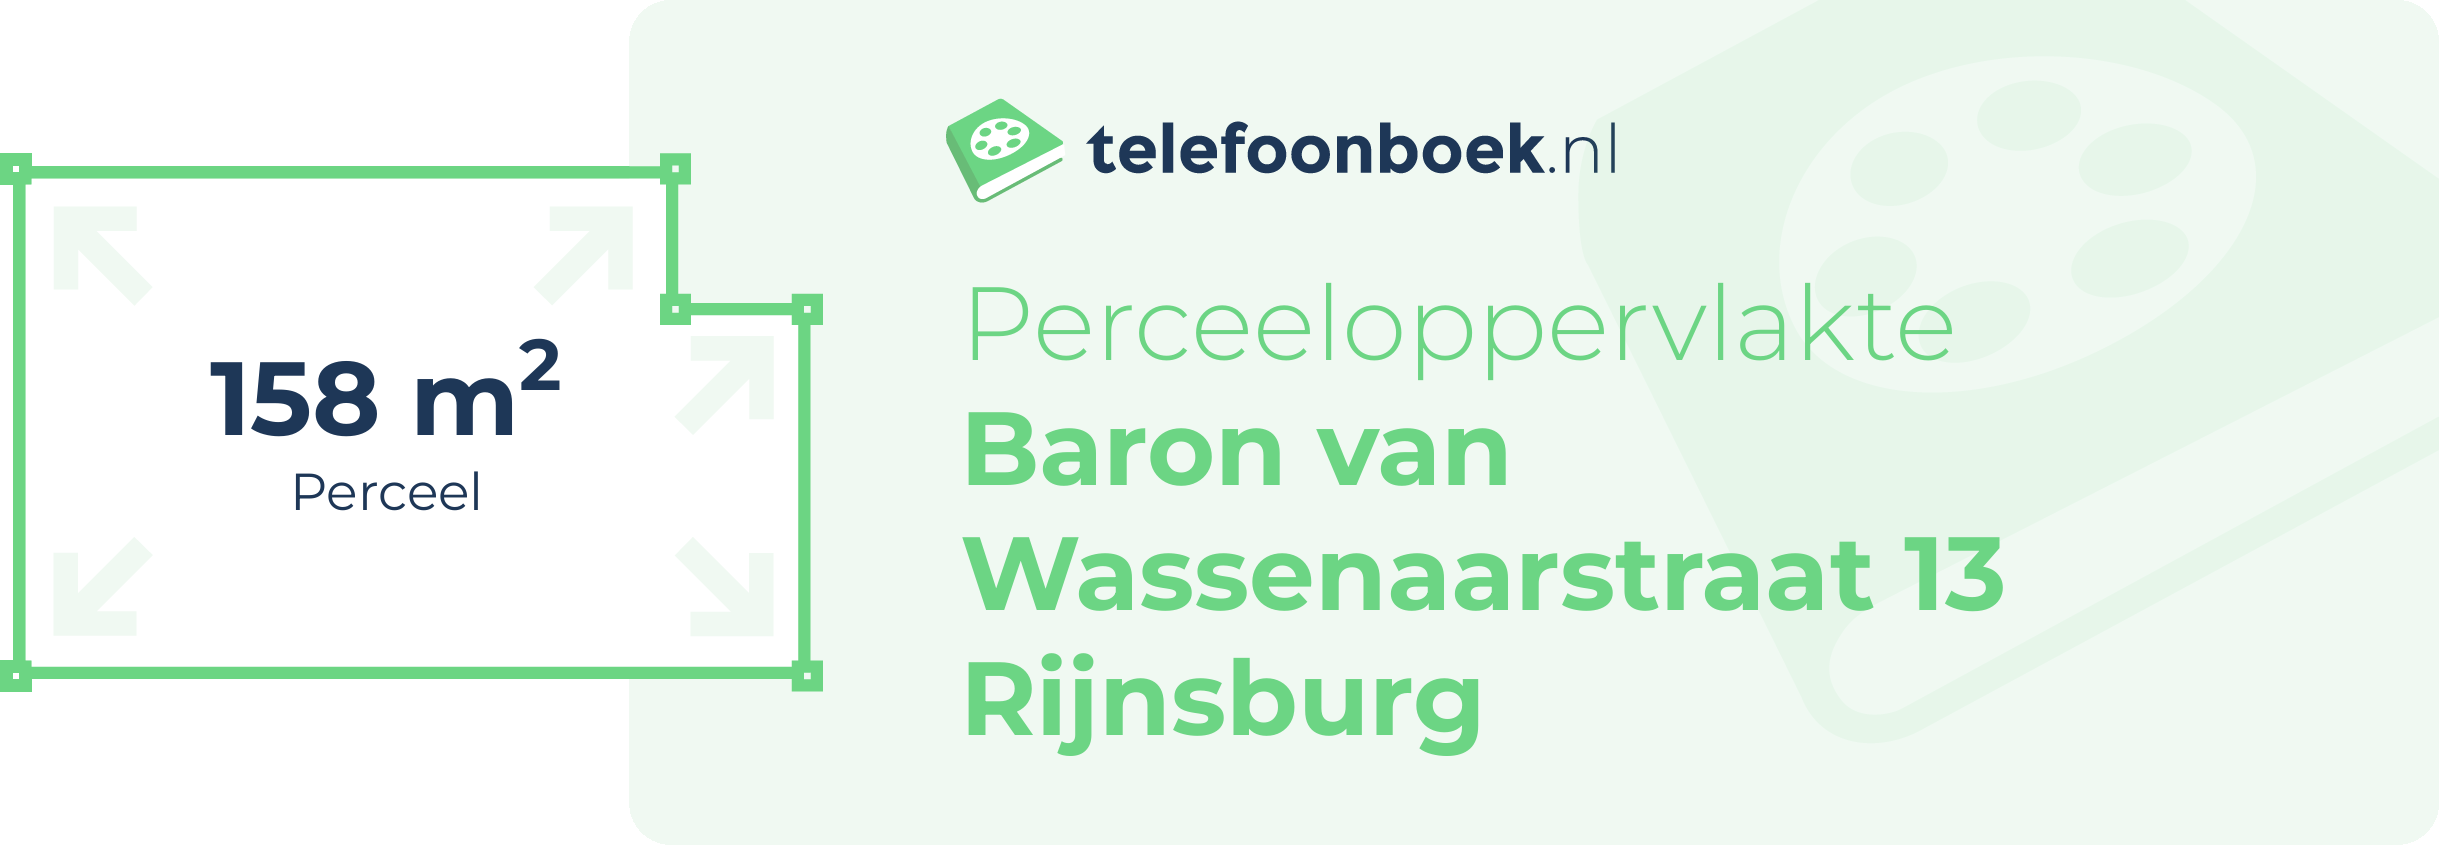 Perceeloppervlakte Baron Van Wassenaarstraat 13 Rijnsburg